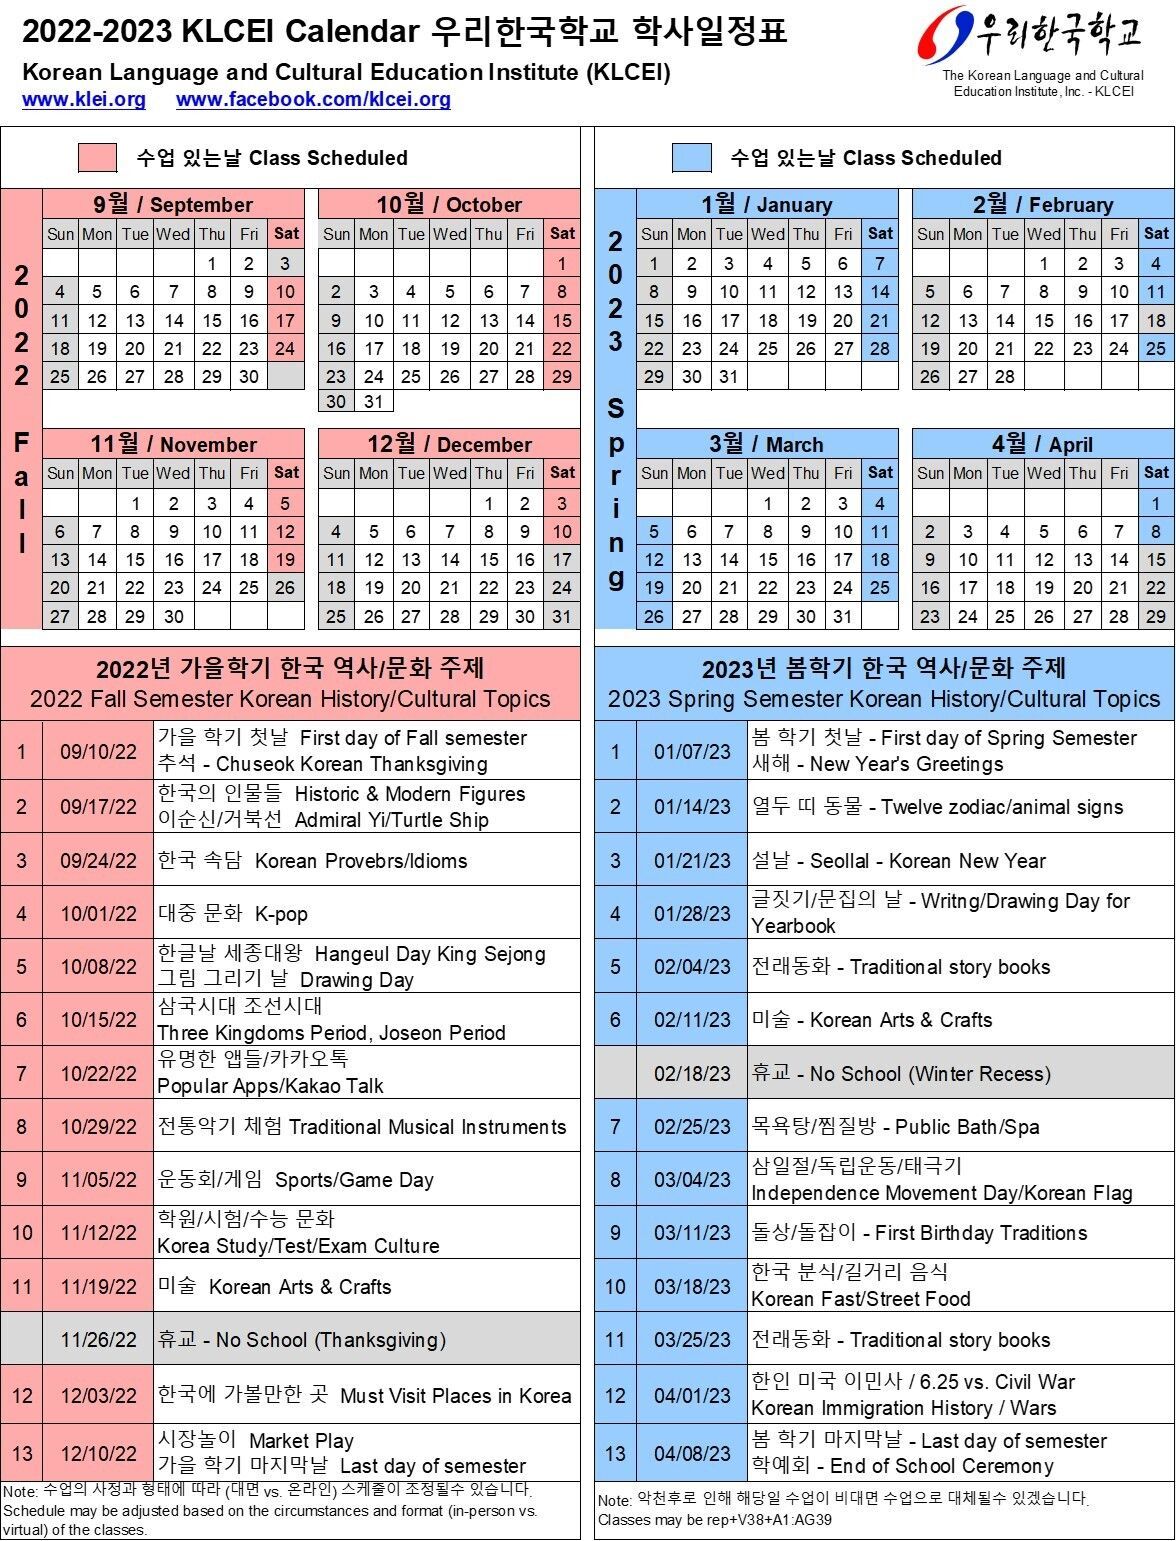 2022-2023 Calendar 학교 일정표